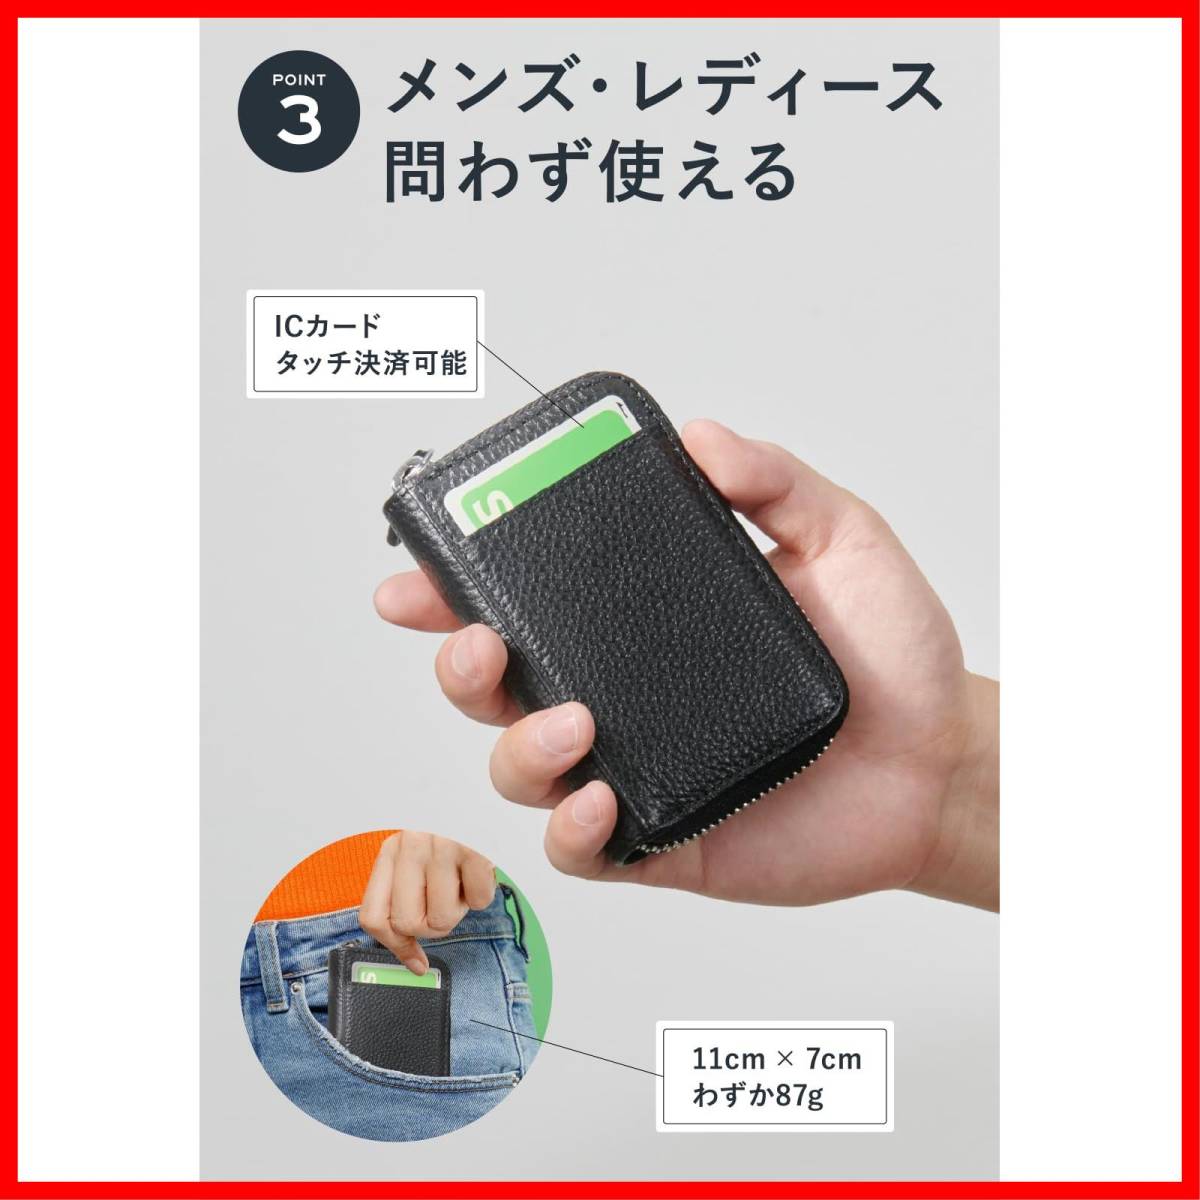 【新着商品】[NEESE] クレジットカードケース カード入れ スキミング防止 じゃばら 大容量 コインケース メンズ レディース